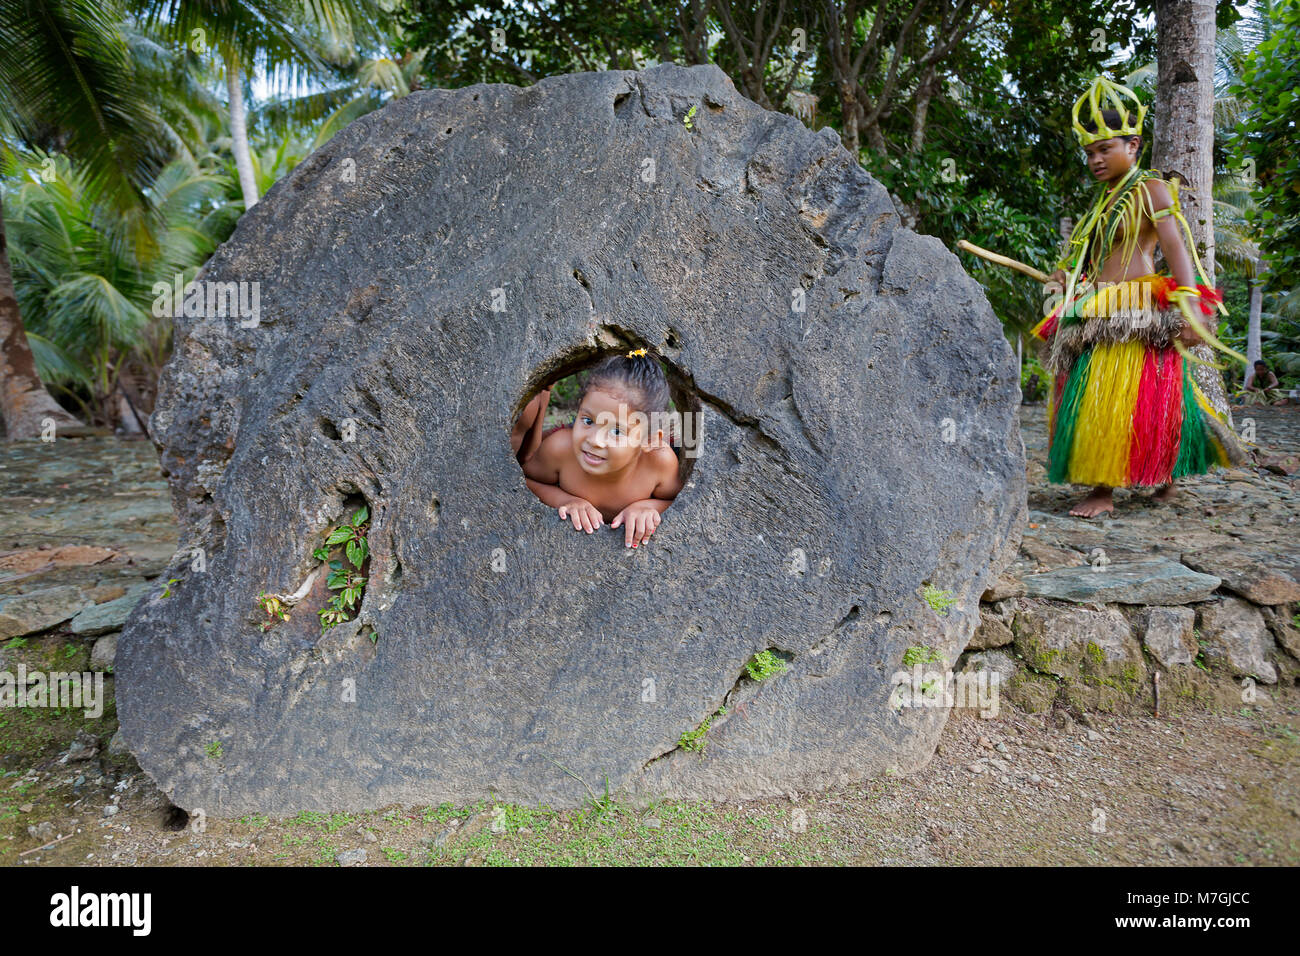 Questa ragazza è raffigurato guardando attraverso il foro nel centro di pietra del denaro in un villaggio sull'isola di Yap, Micronesia. Foto Stock